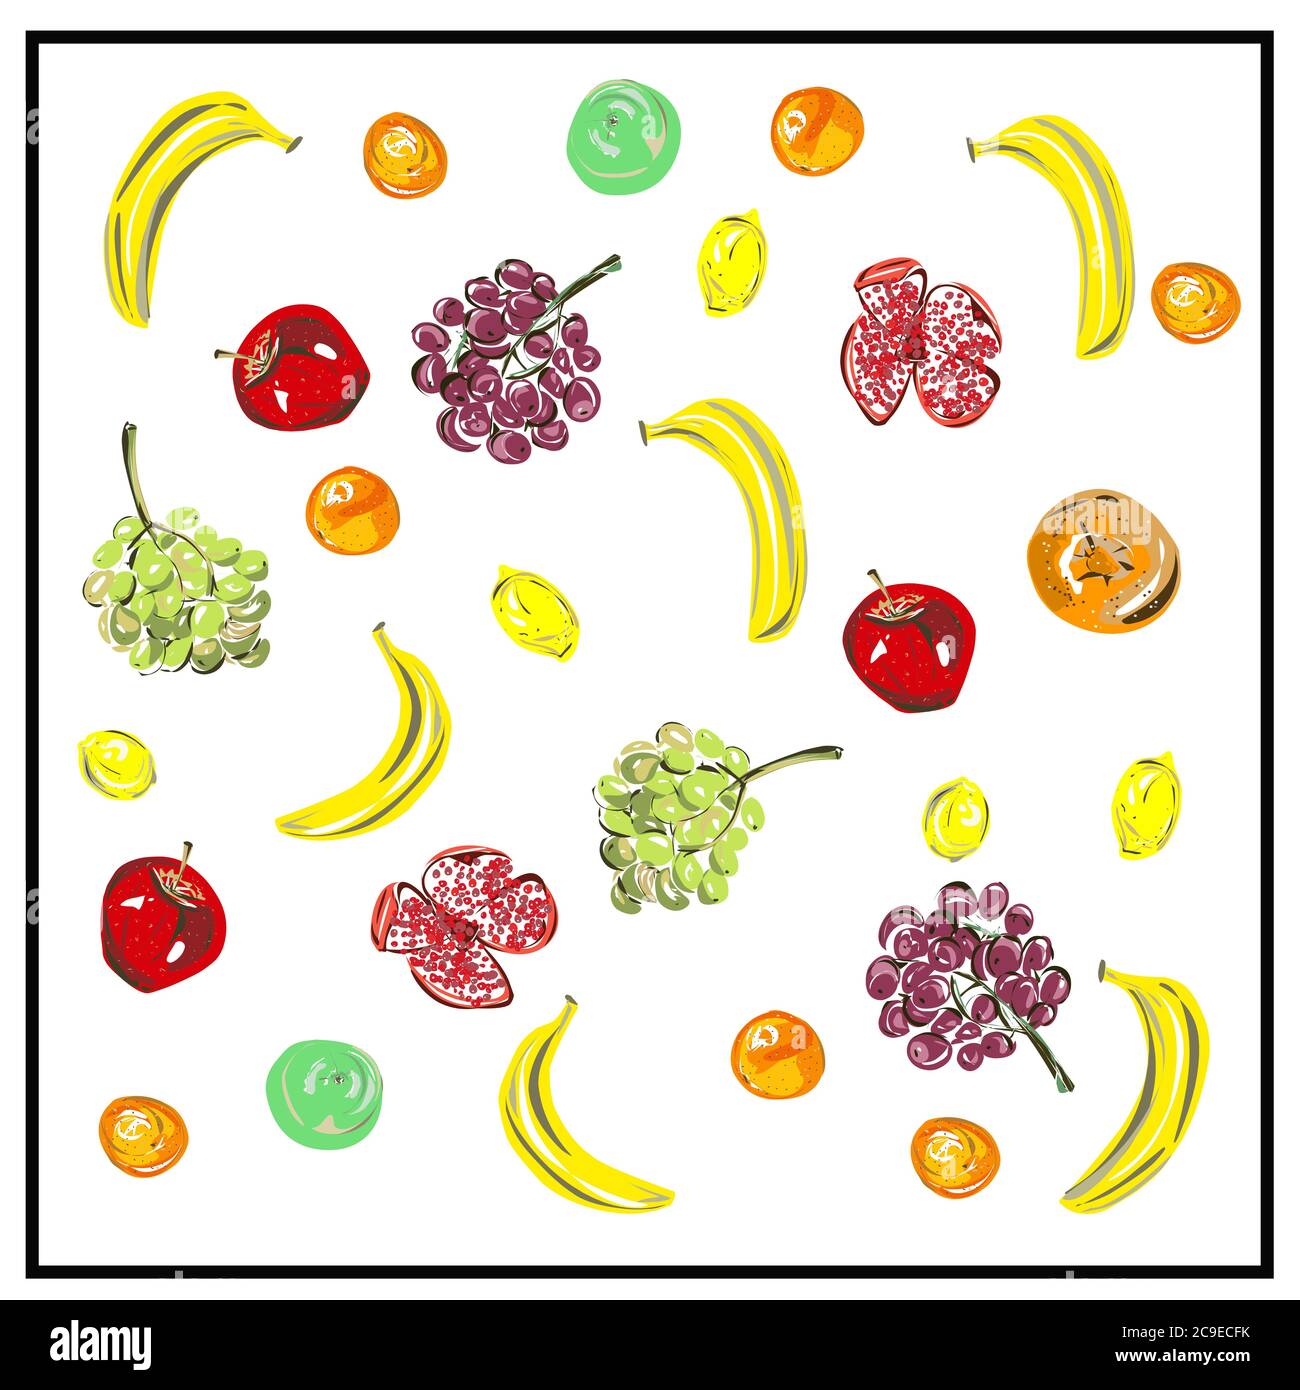 Modello, un insieme di frutta fresca. Immagine isolata di frutta su sfondo bianco. Illustrazione Vettoriale